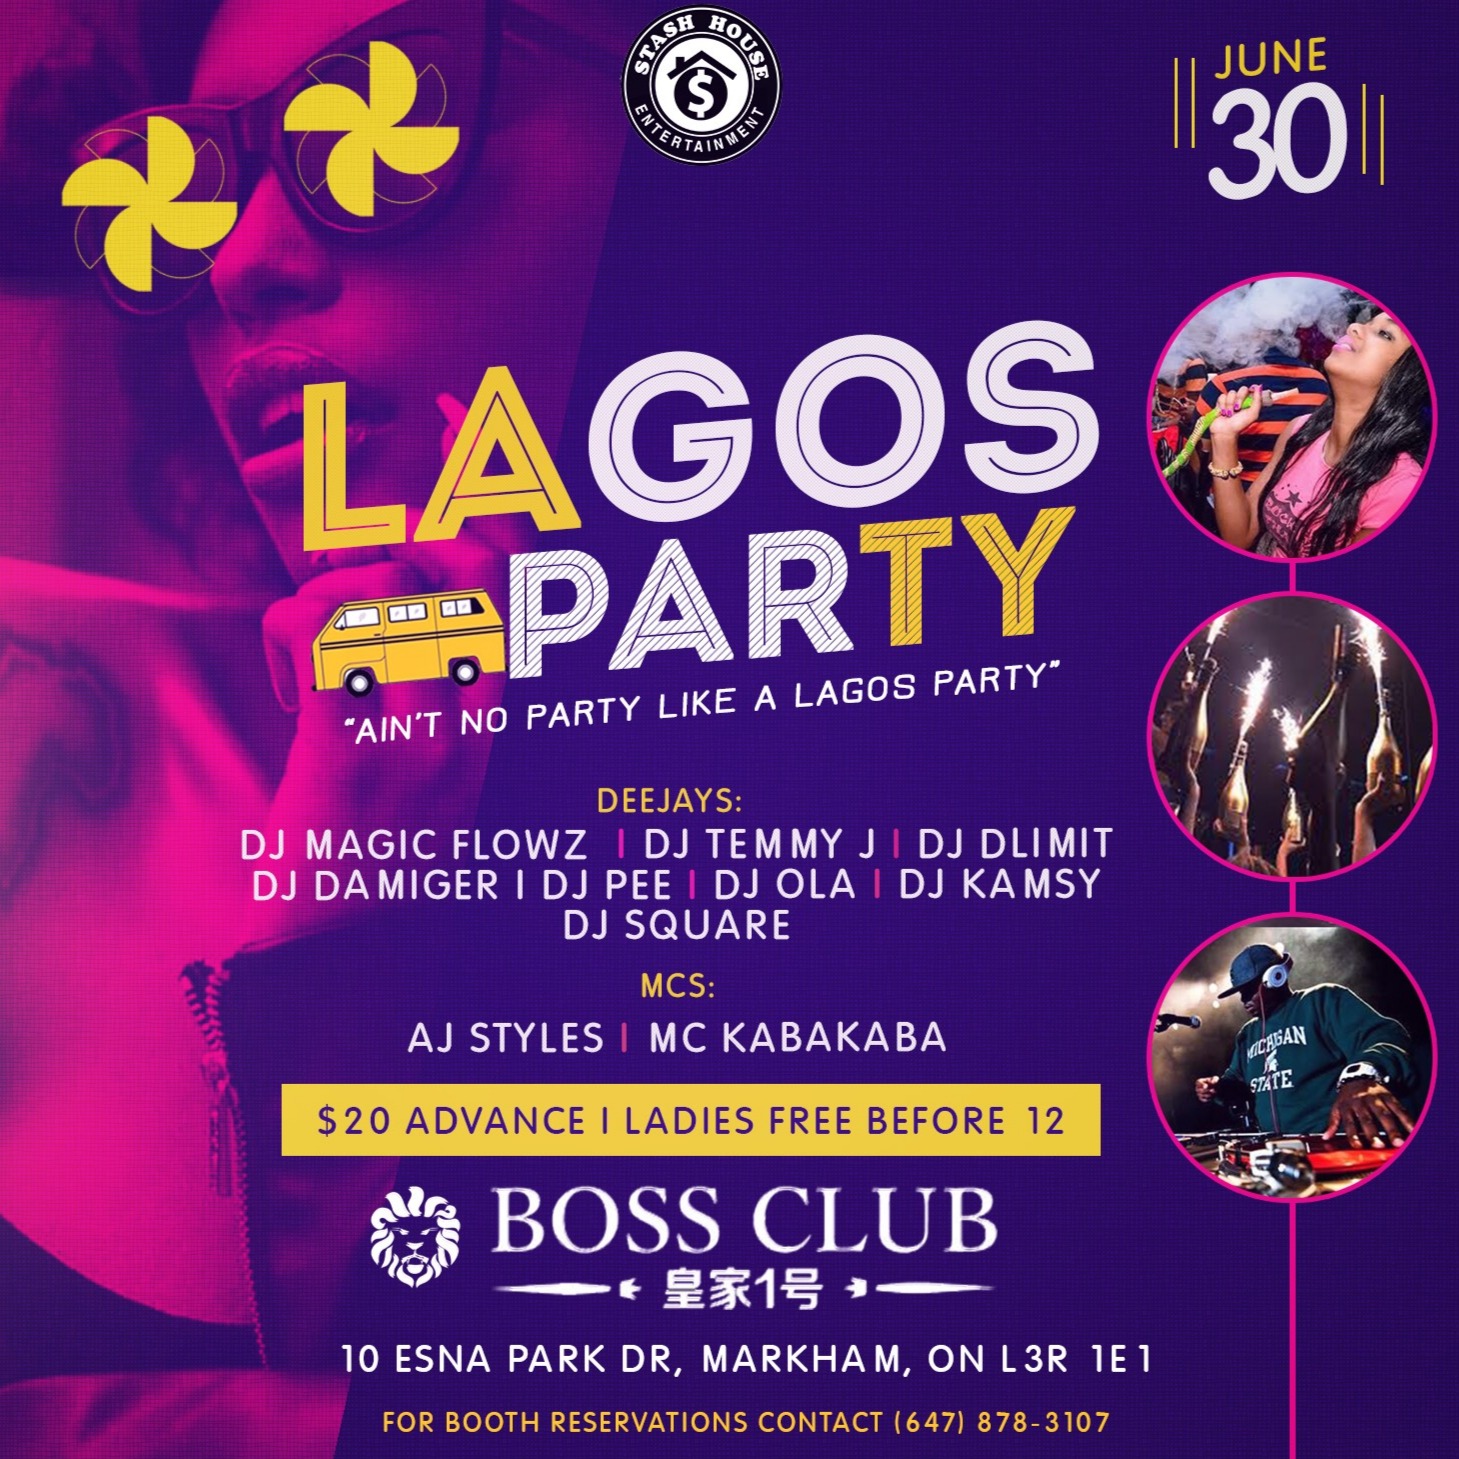 LAGOS PARTY